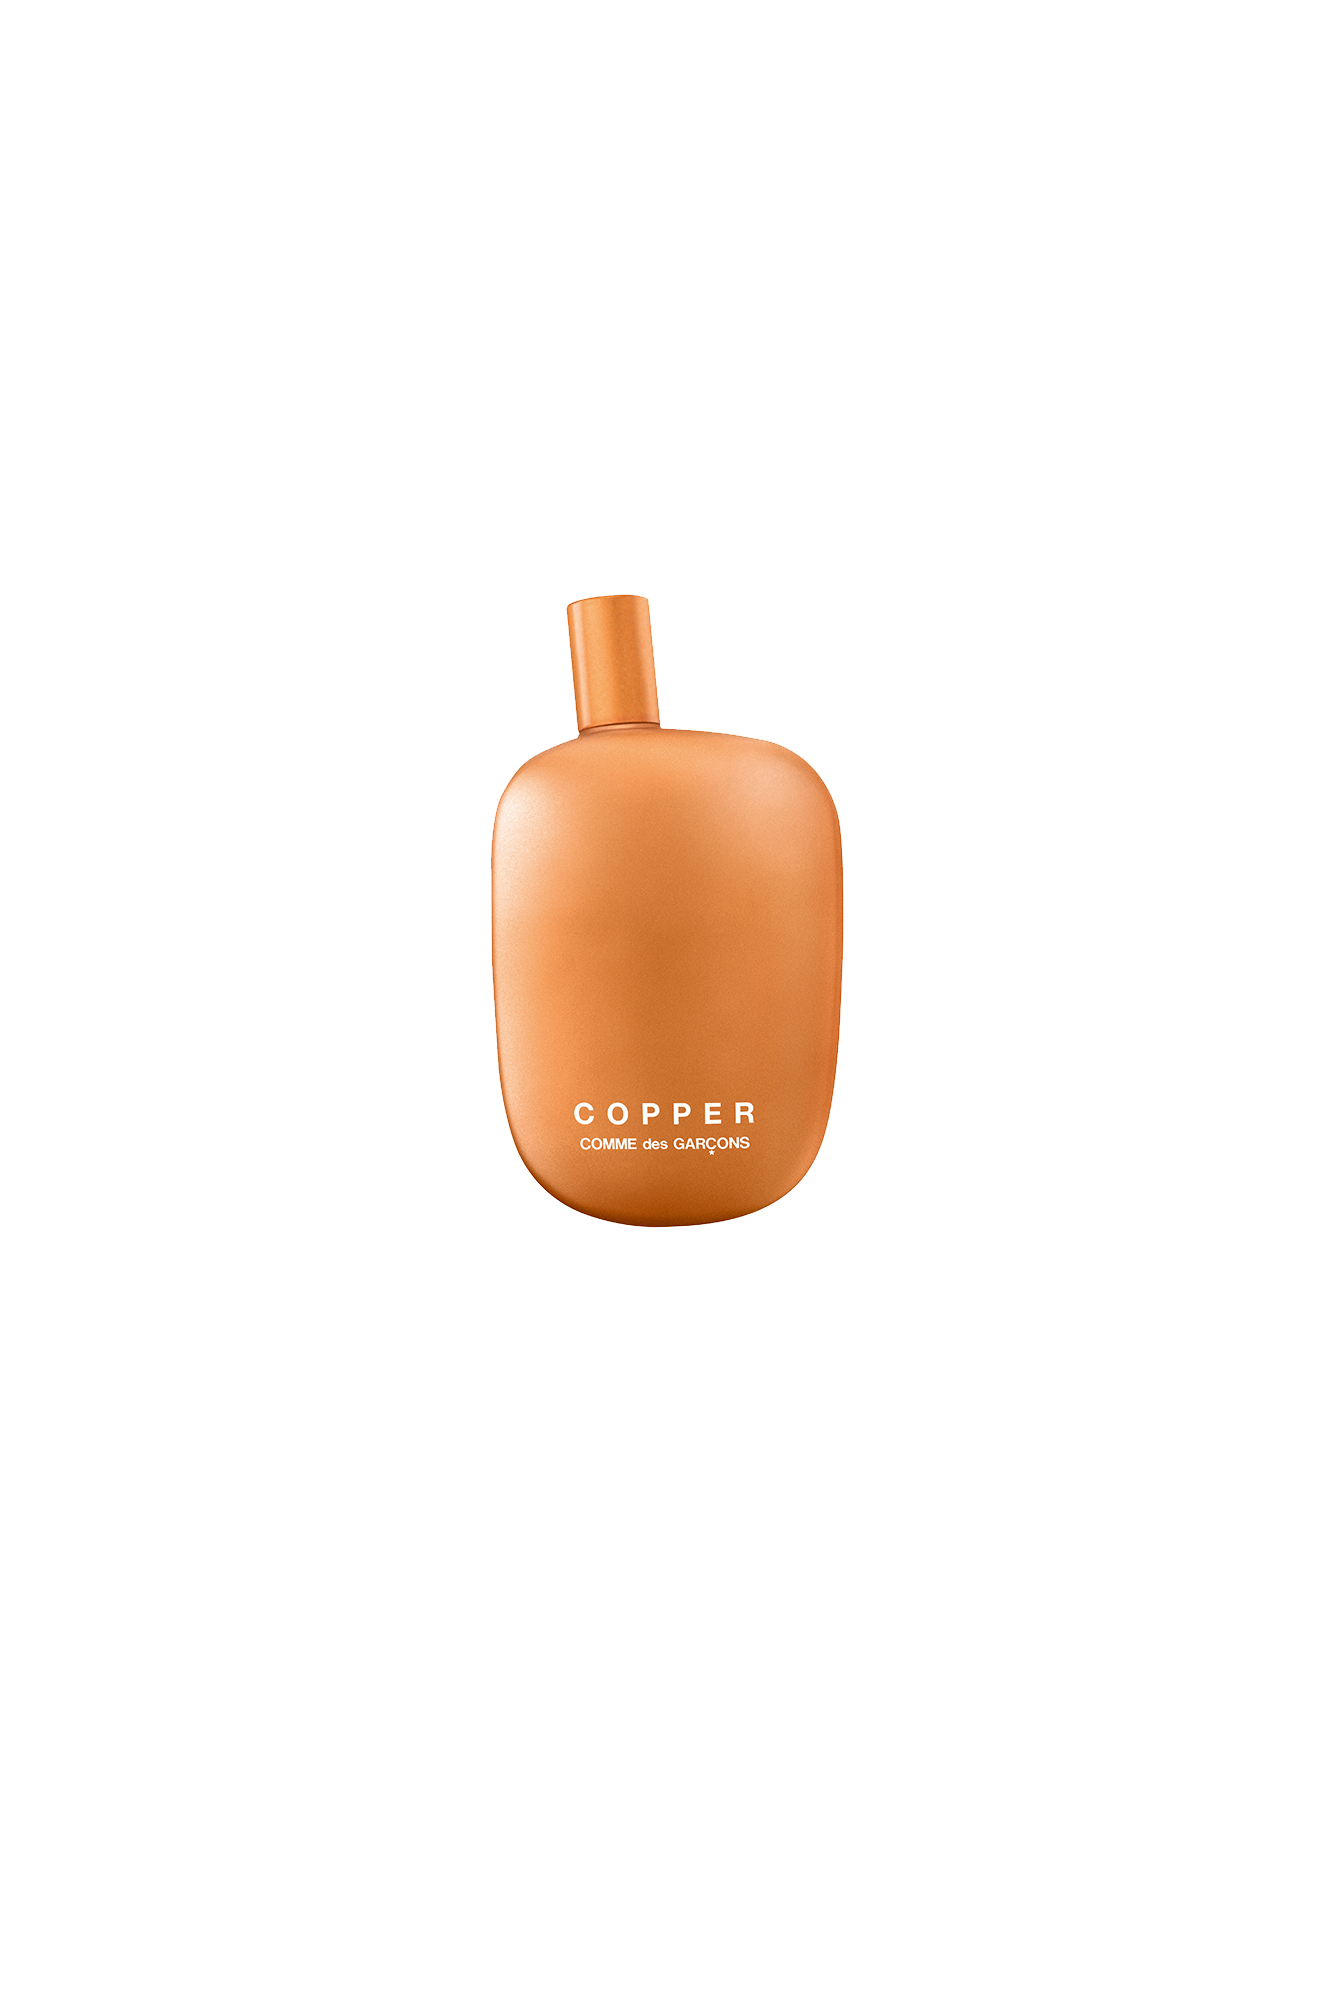 Comme Des Garçons Parfum Goods COPPER 100 ml Eau de Parfum Multicolor 65133821#000#EDP#OS - One Block Down